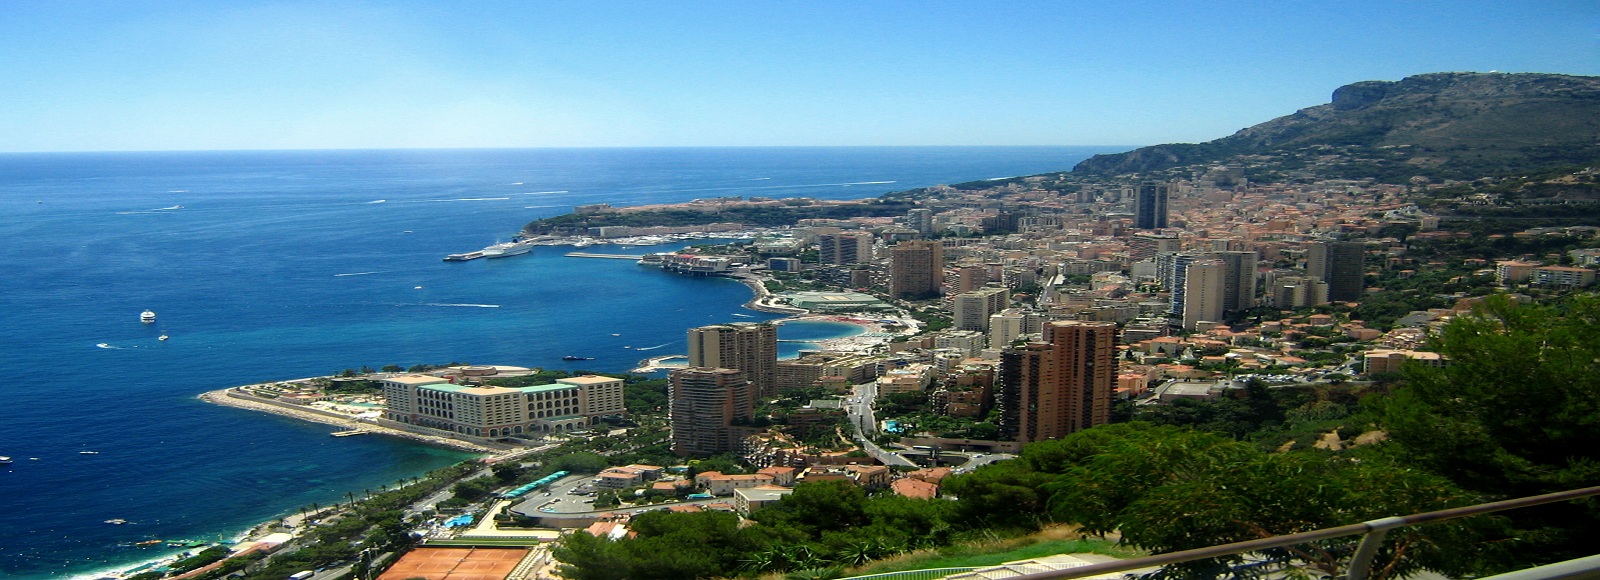 Ofertas de Traslados en Monaco. Traslados económicos en Monaco 